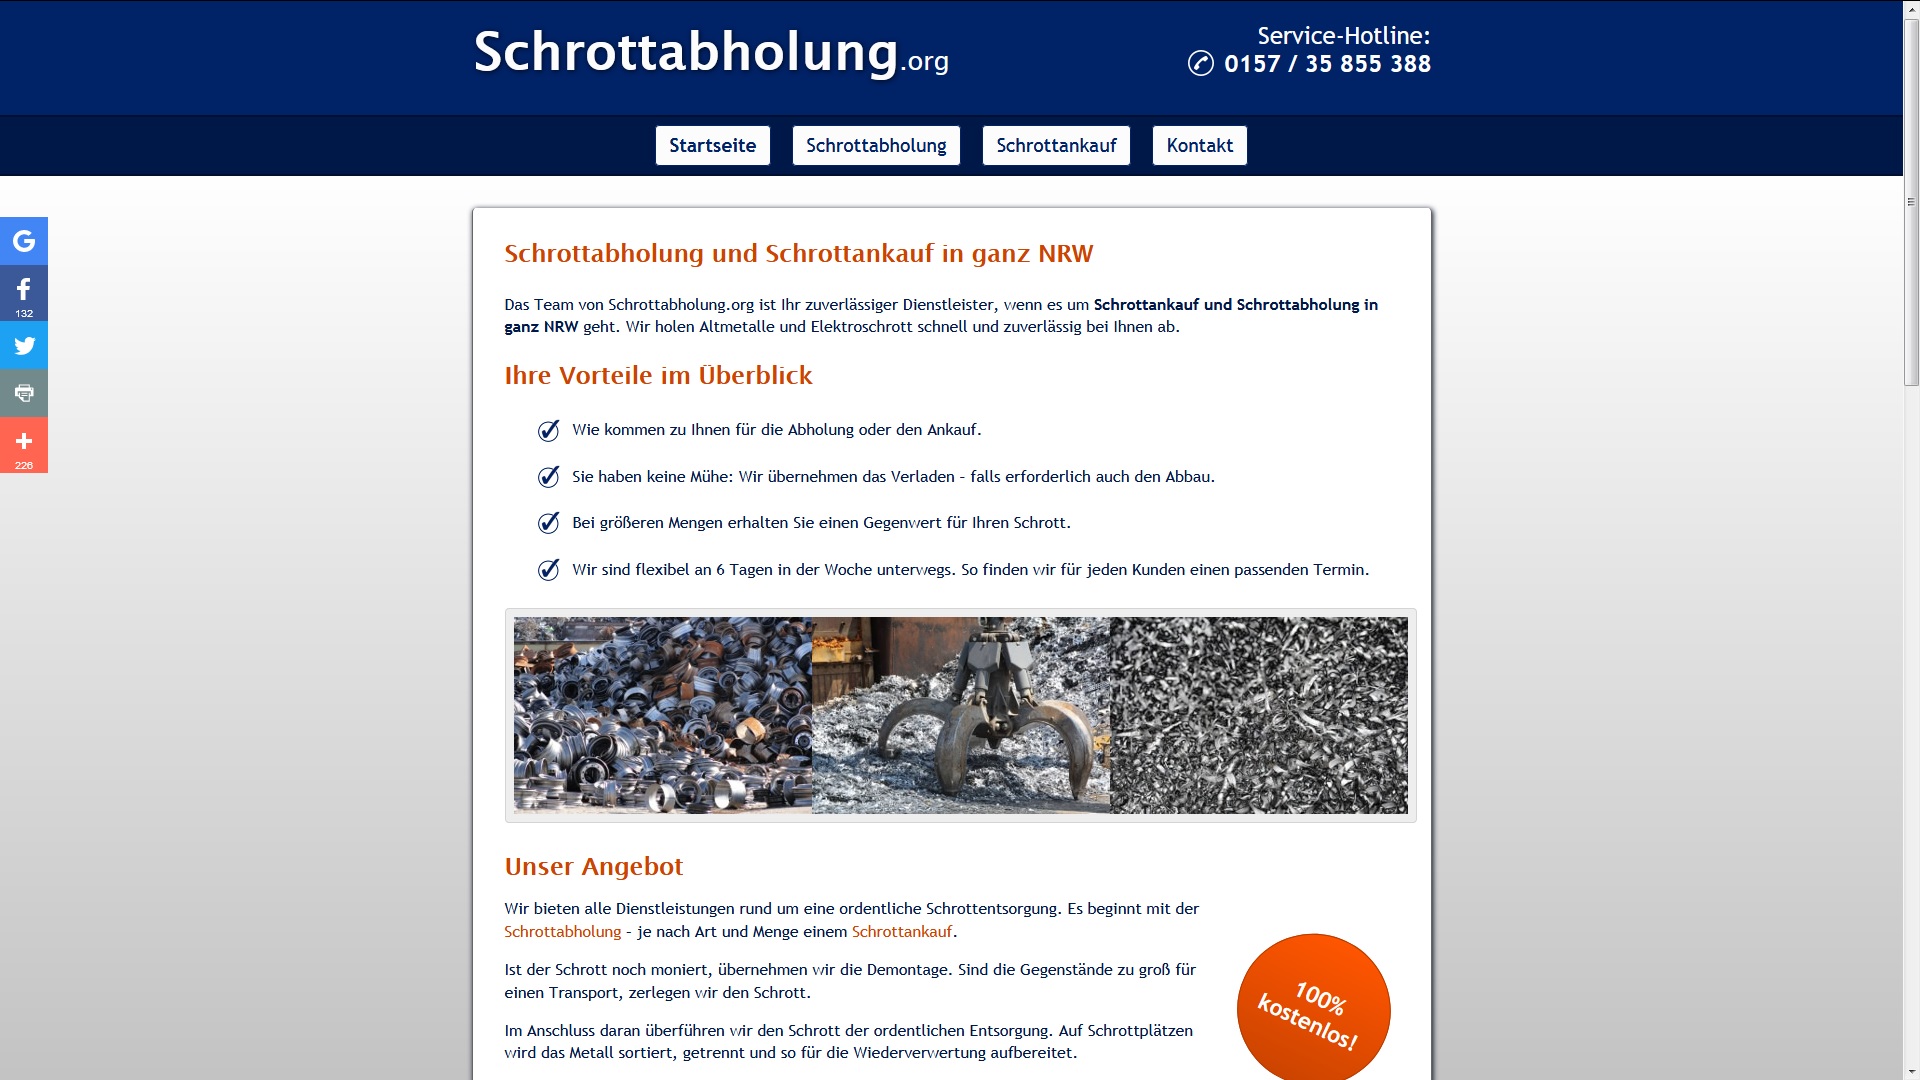 schrottabholung moenchengladbach die alternative zum sperrmuelltermin - Schrottabholung Mönchengladbach–die Alternative zum Sperrmülltermin